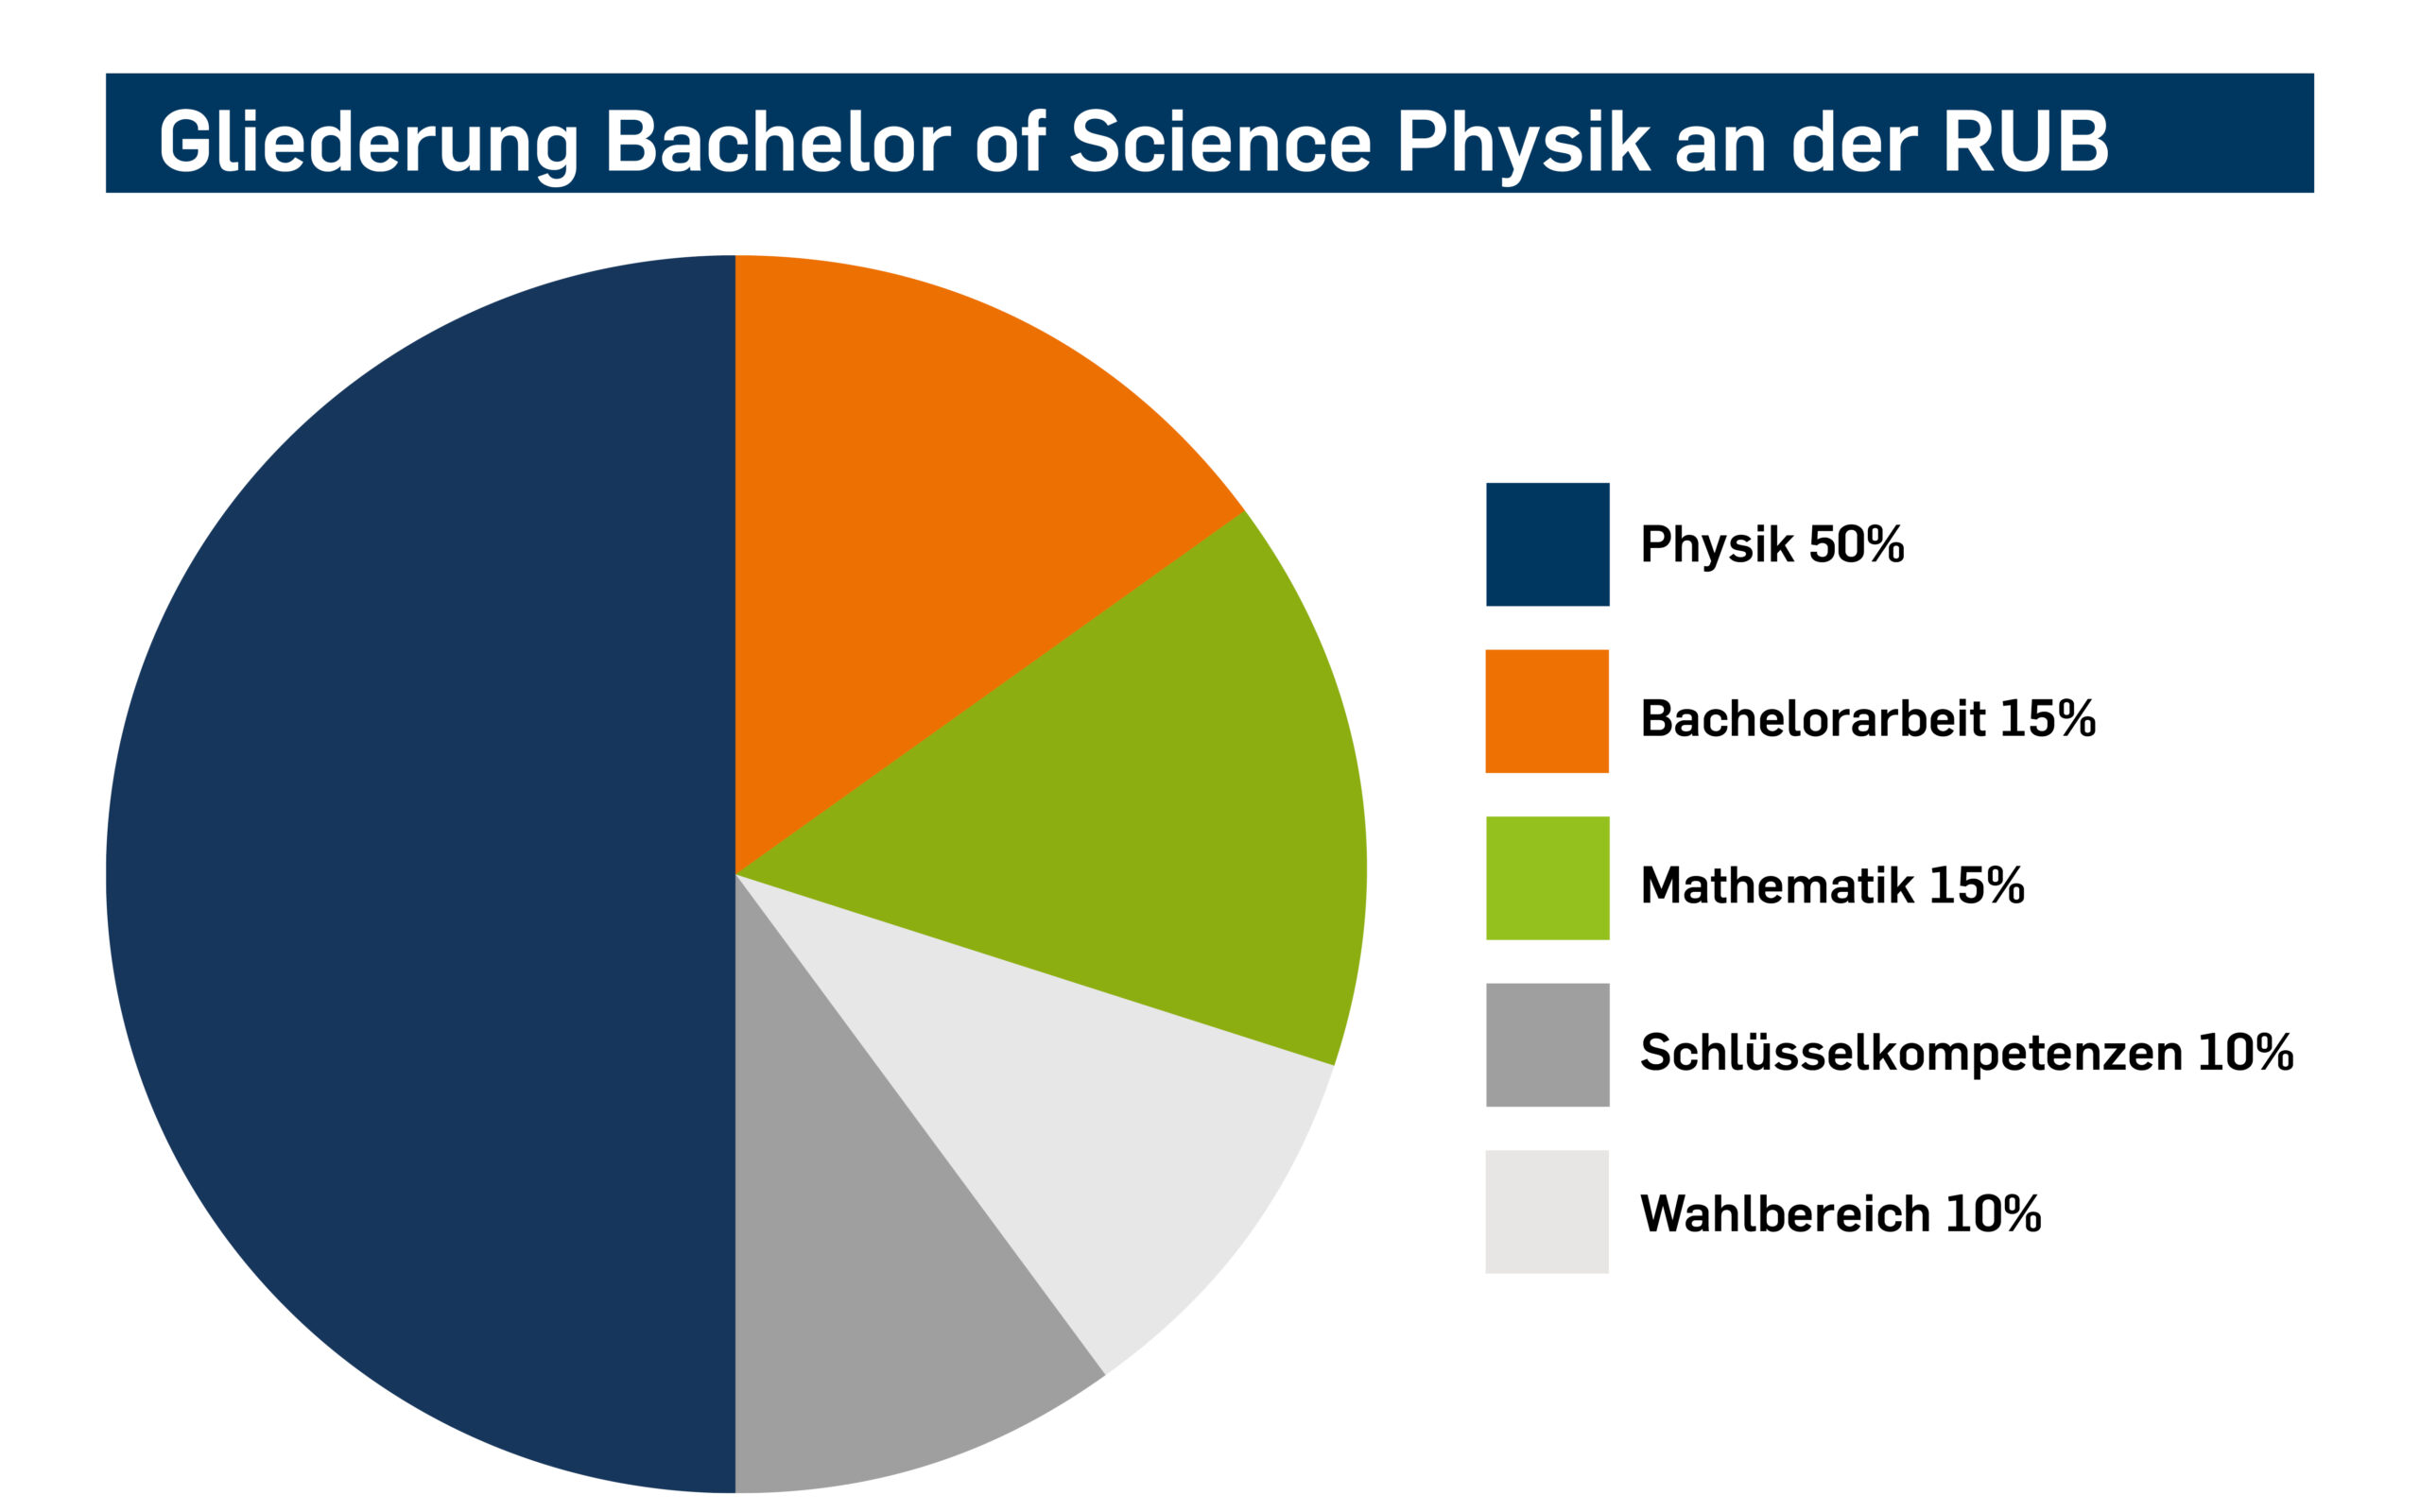 Gliederung des Bachelor of Science in Physik als Kreisdiagramm: Das Studium gliedert sich in folgende Bestandteile: 50% Physik, 15% Bachelorarbeit, 15% Mathematik, 10% Schlüsselkompetenzen, 10% Wahlbereich